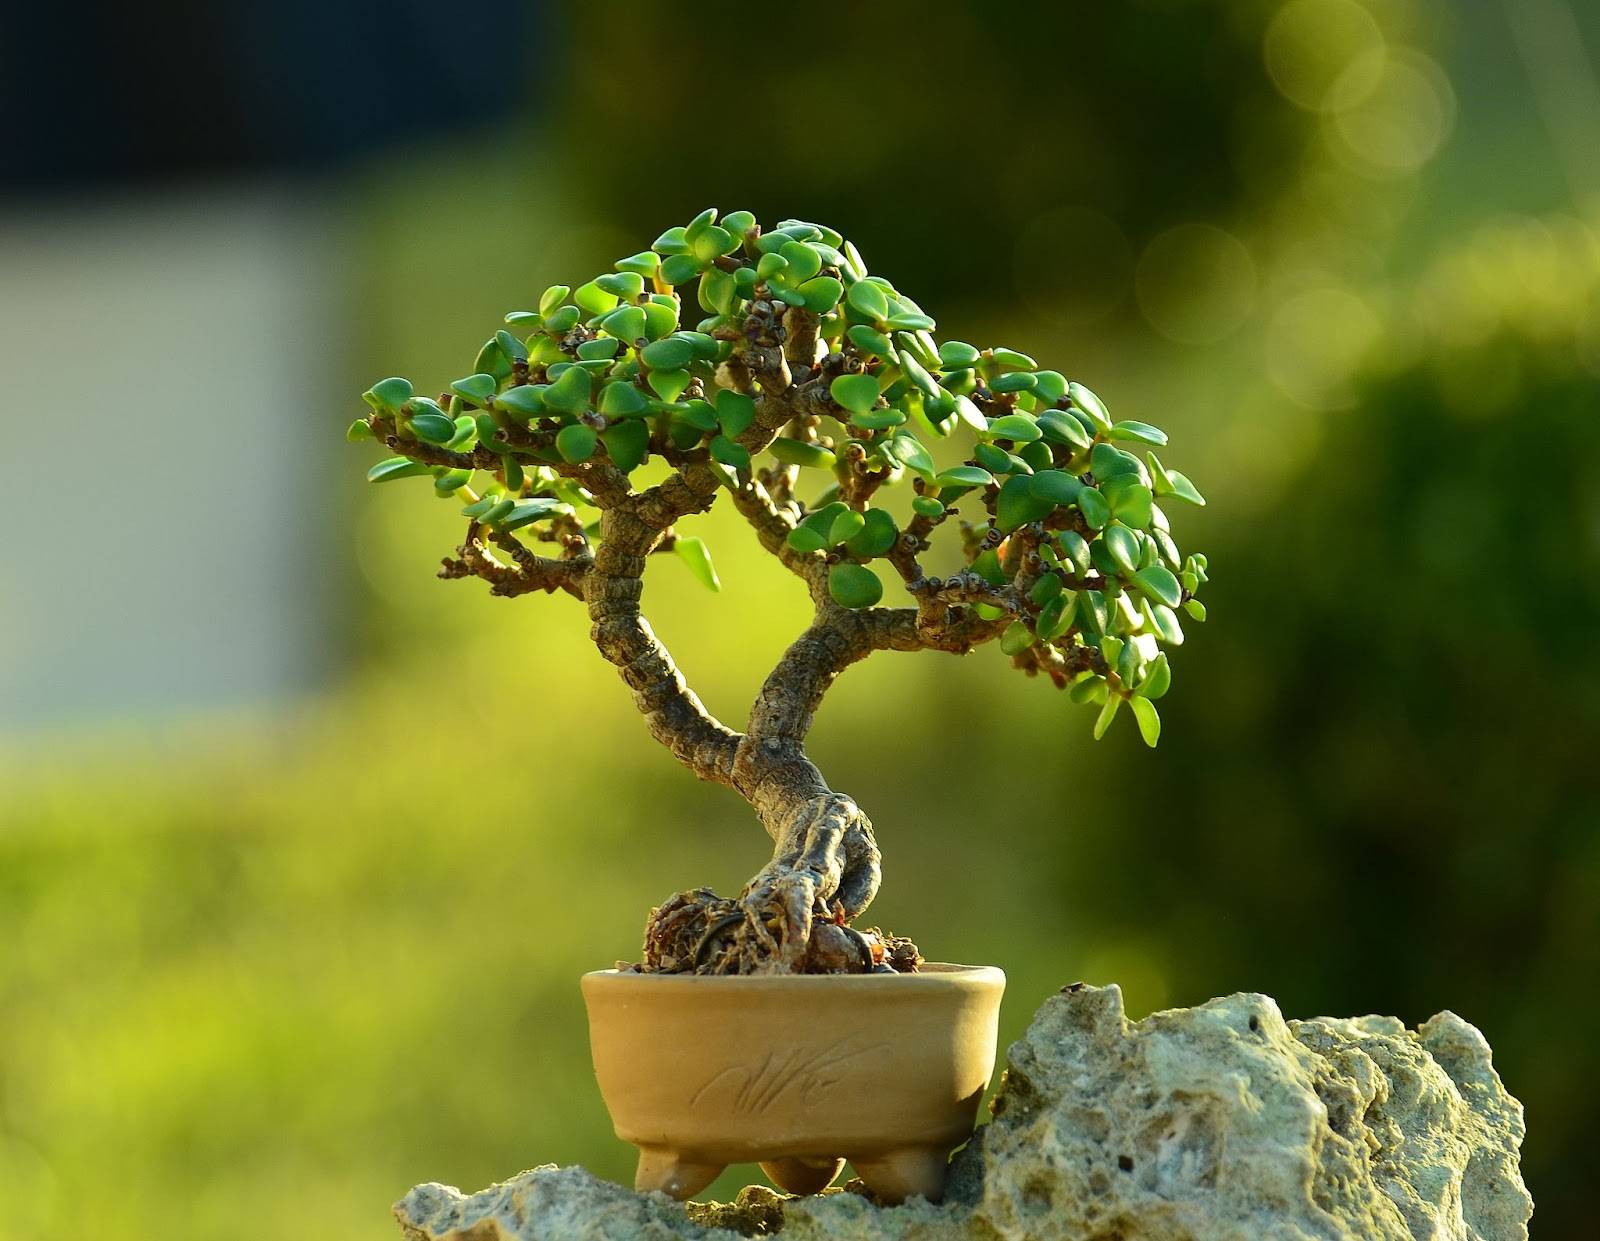 taş üstünde duran bonsai 